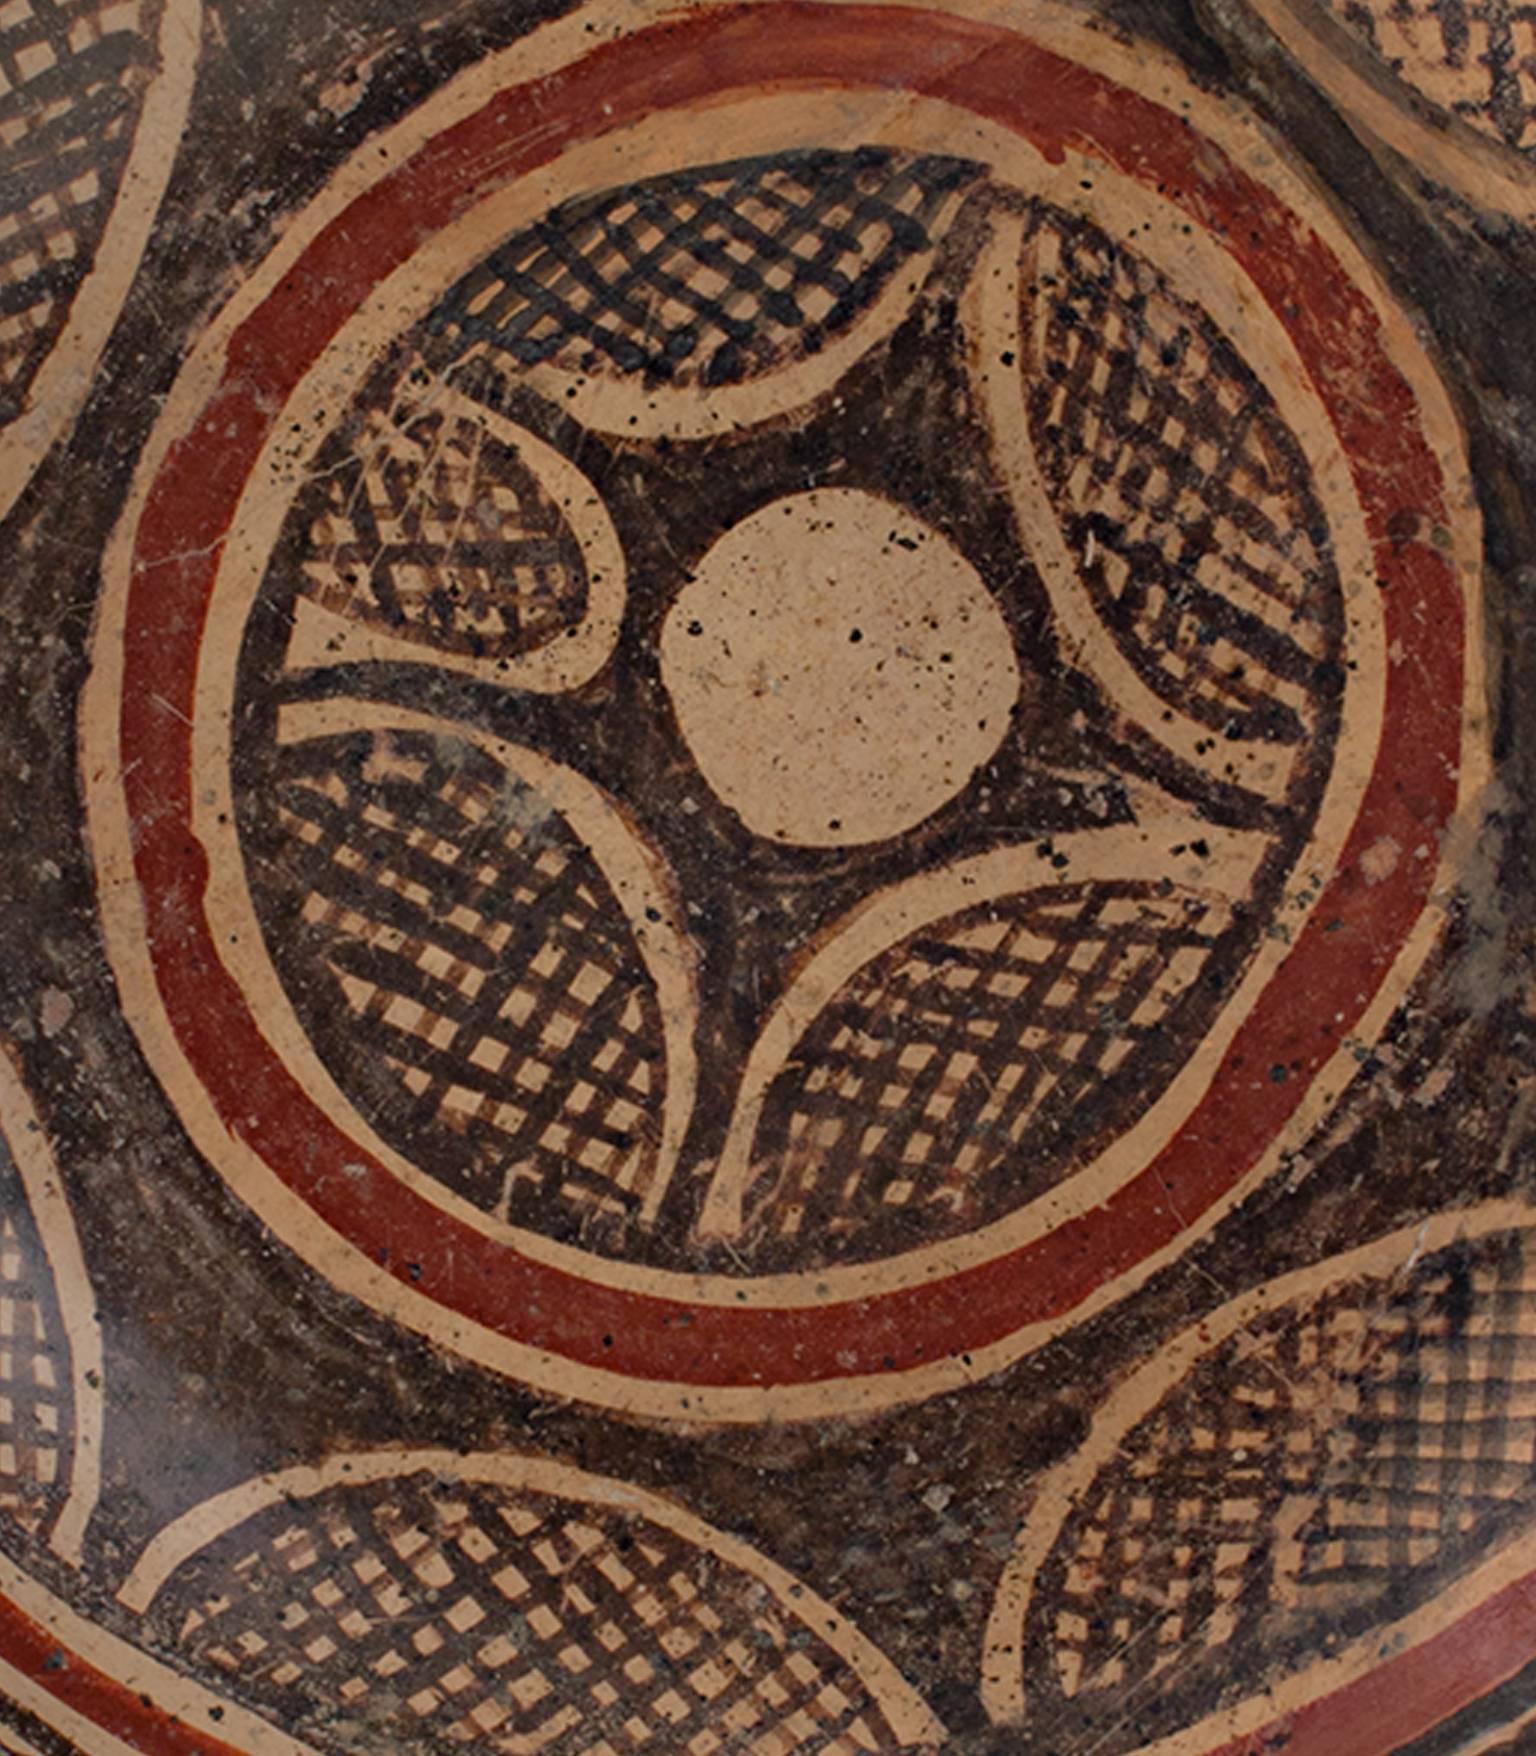 Diese Chinesco-Schale stammt aus einer präkolumbianischen Gesellschaft aus der Zeit um 300 v. Chr. Es zeigt abstrakte, geometrische Muster in Rot und Schwarz. Der Durchmesser beträgt 8